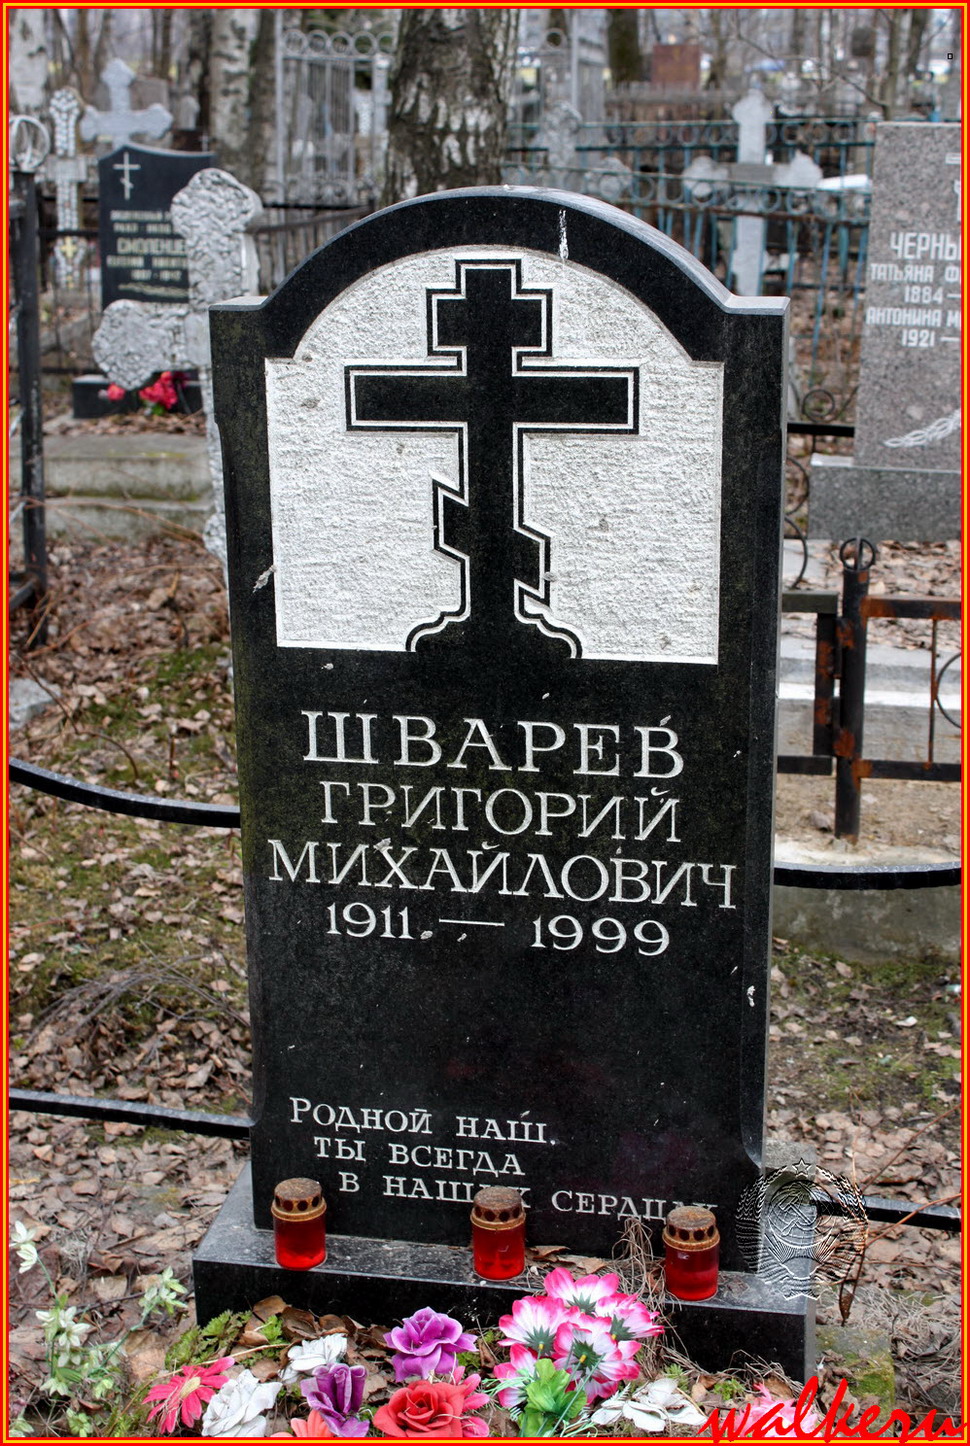 Могила Шварёв Г.М. на Большеохтинском кладбище